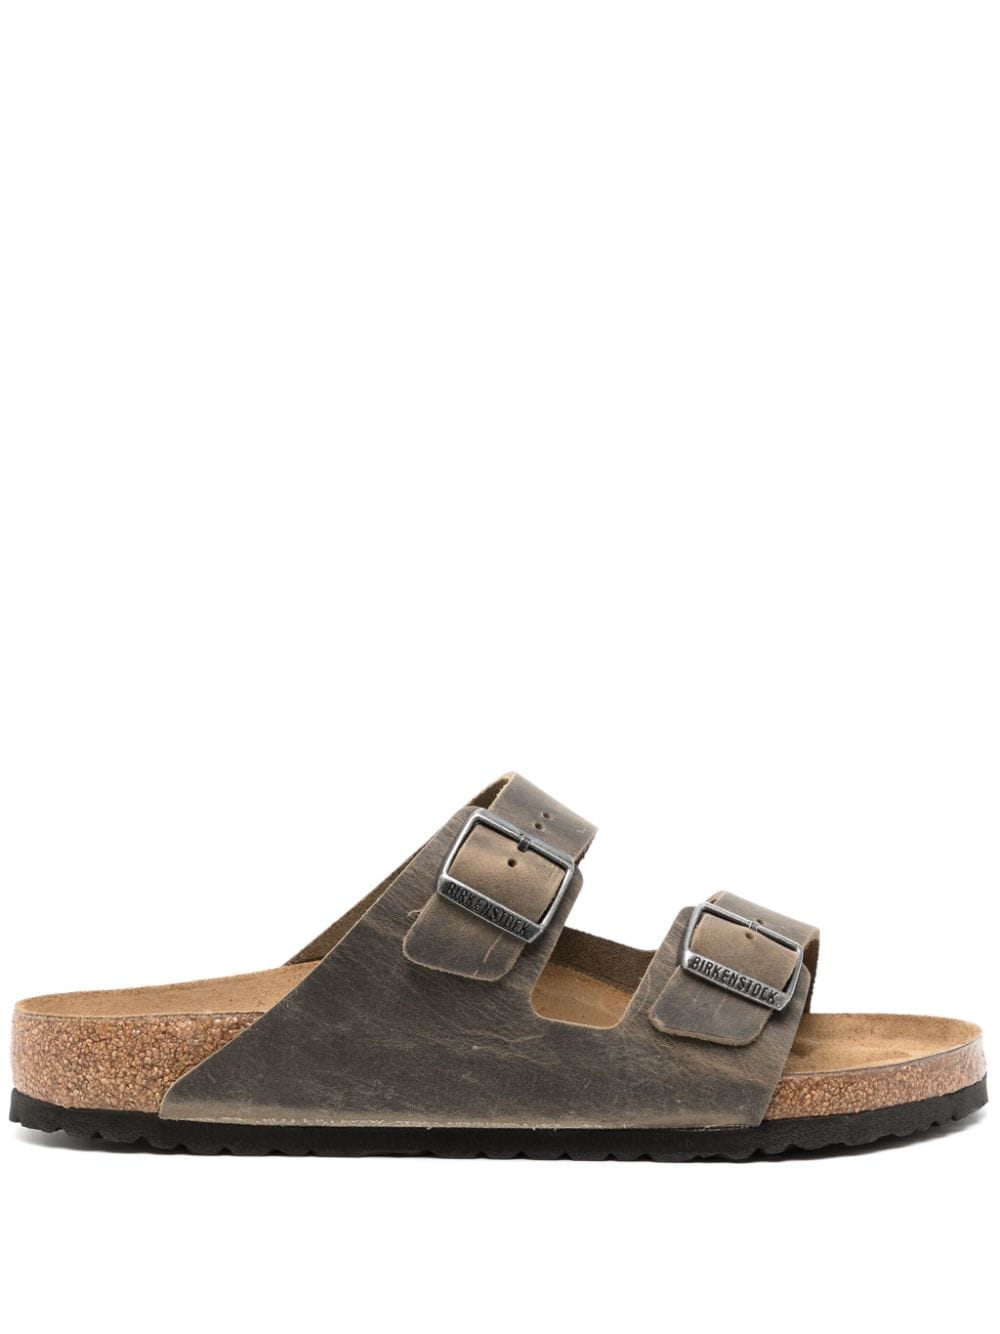 Birkenstock Arizona Leather Sandals In Brown